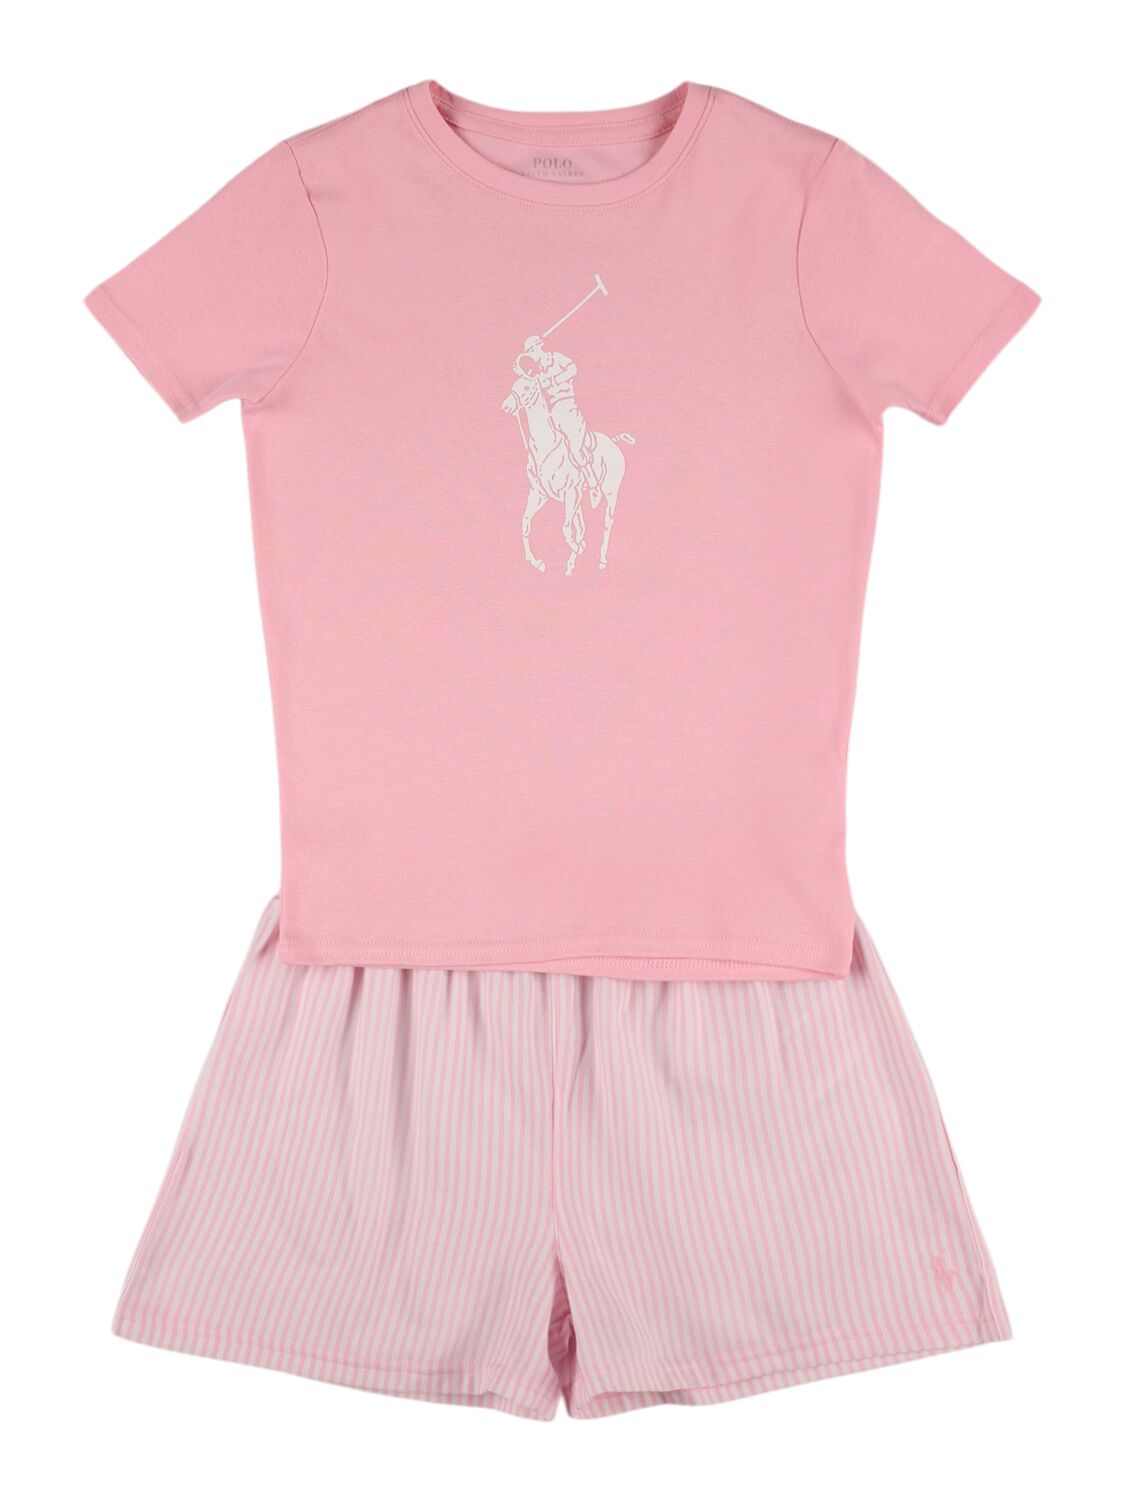 Ralph Lauren Babies' Cotton T-shirt & Shorts In Pink